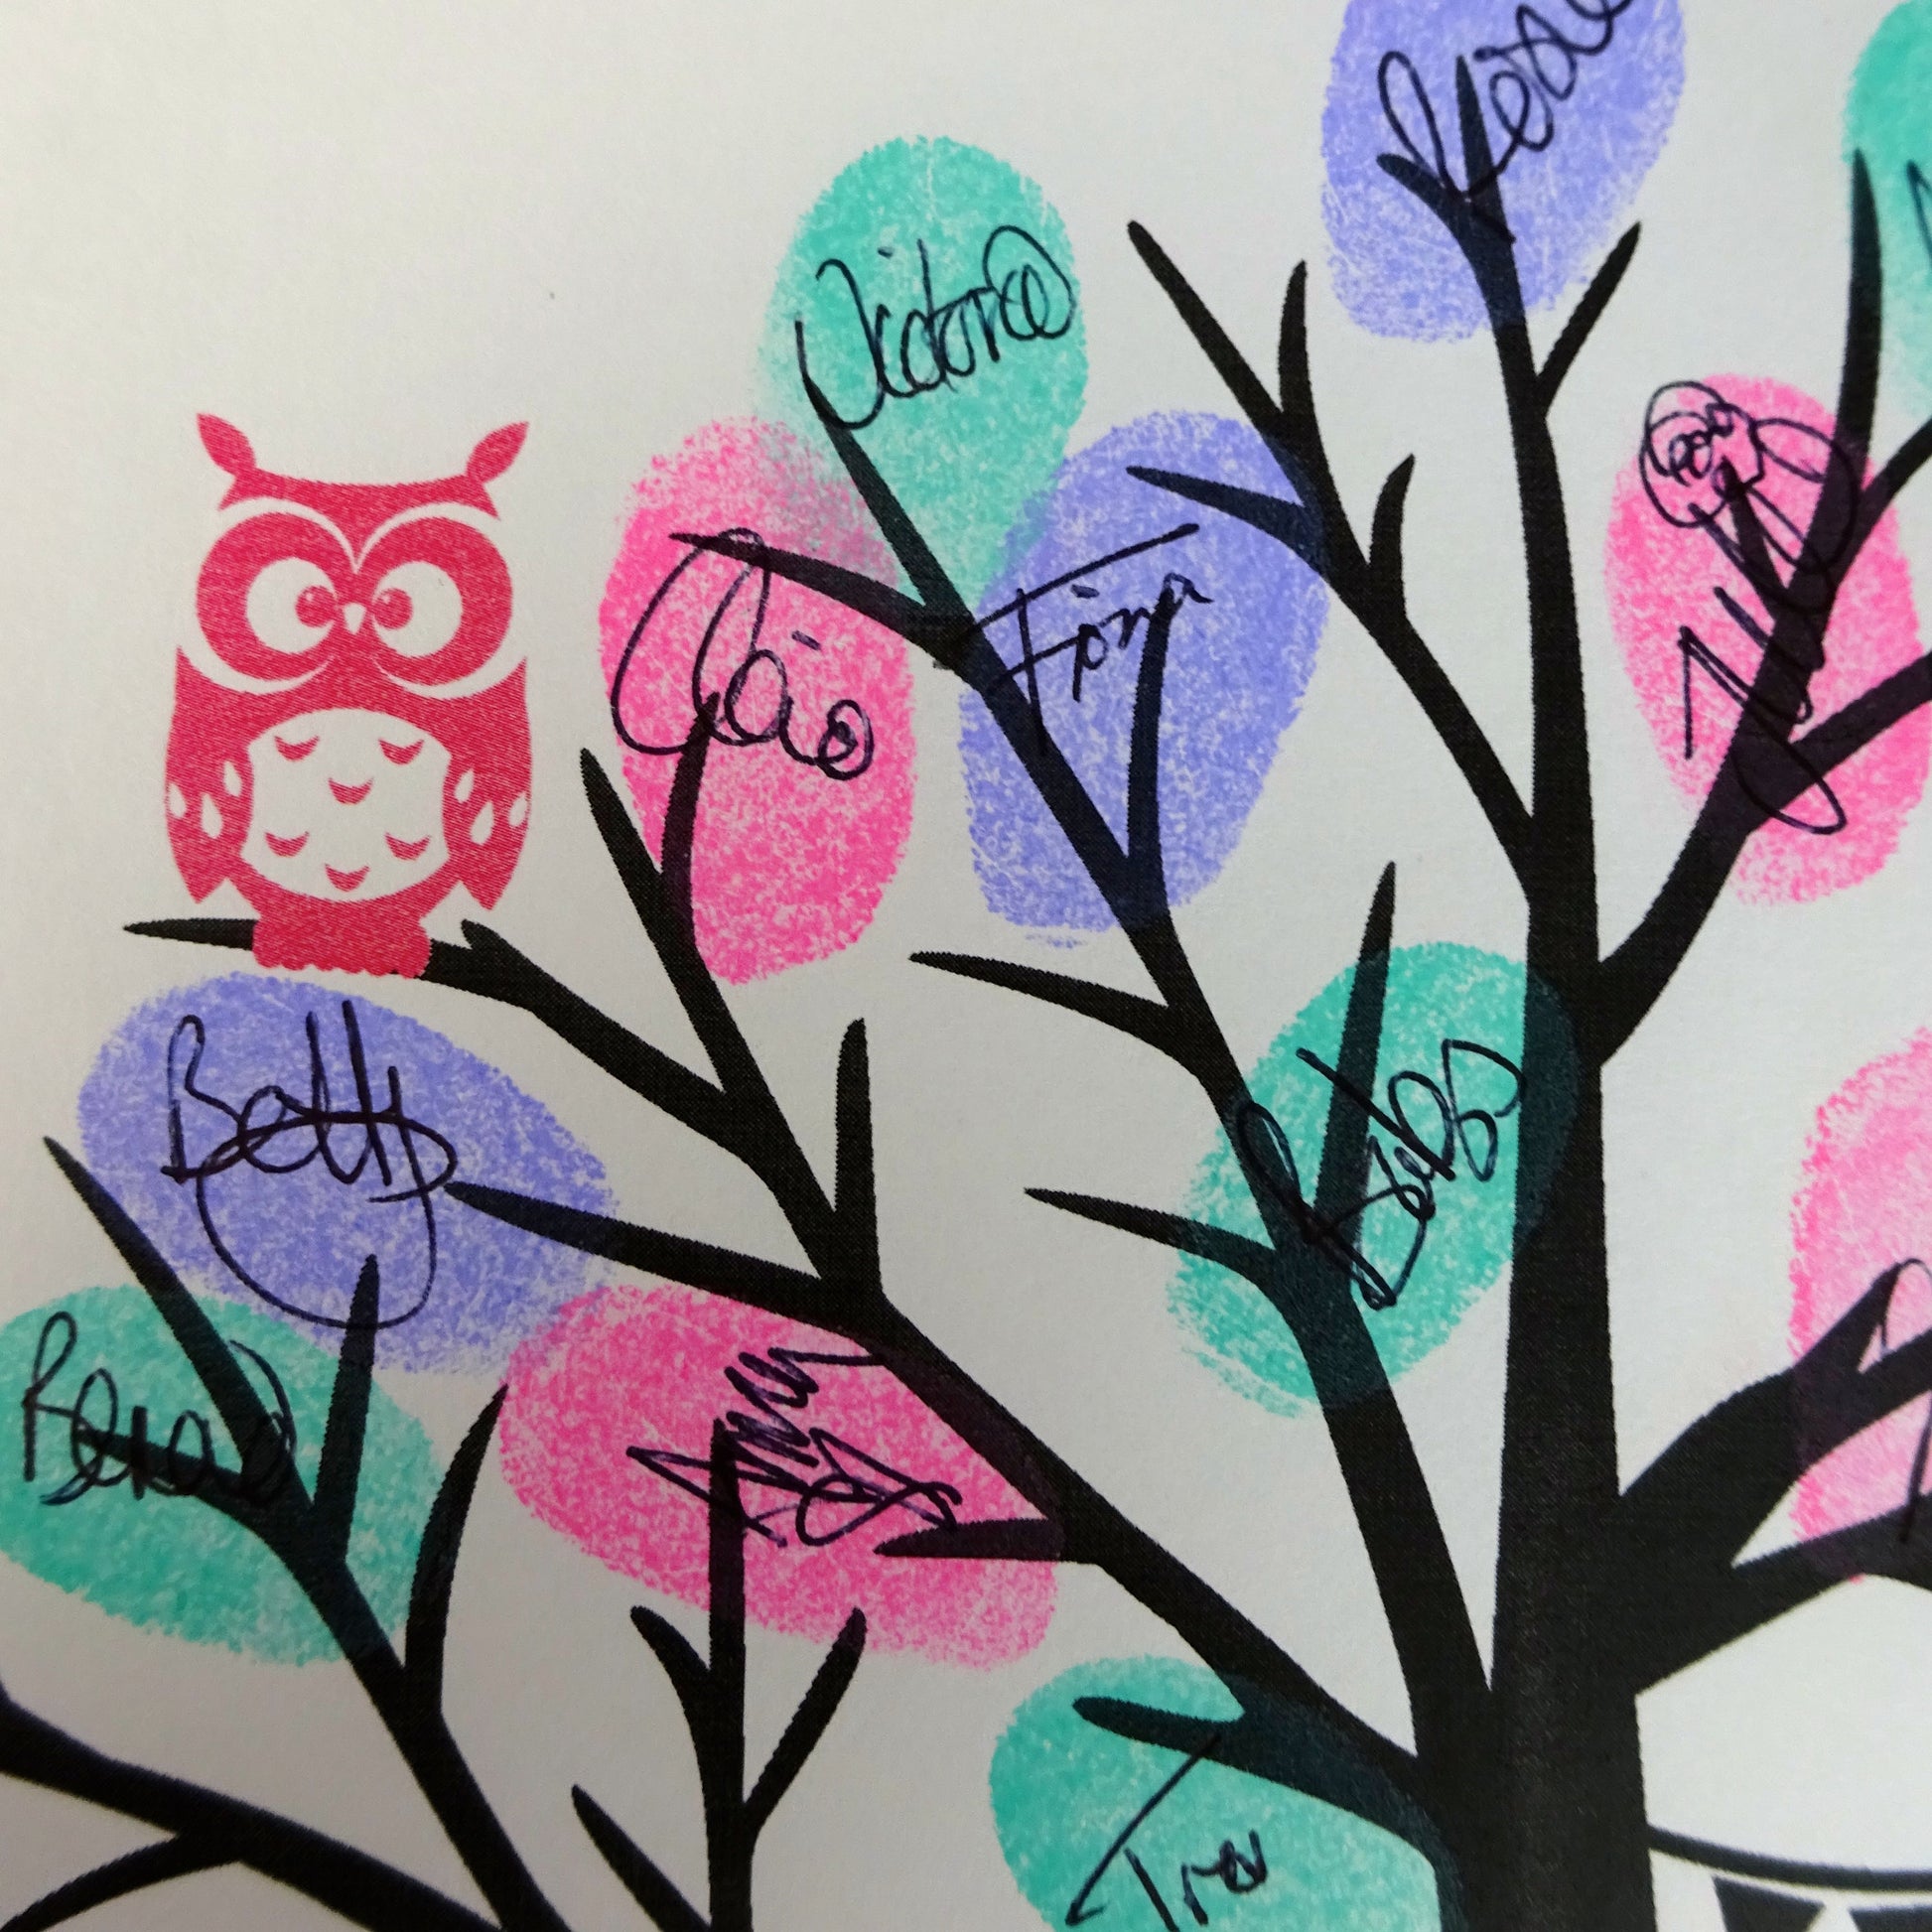 Fingerprint tree / fingerprint leaves, pink owl